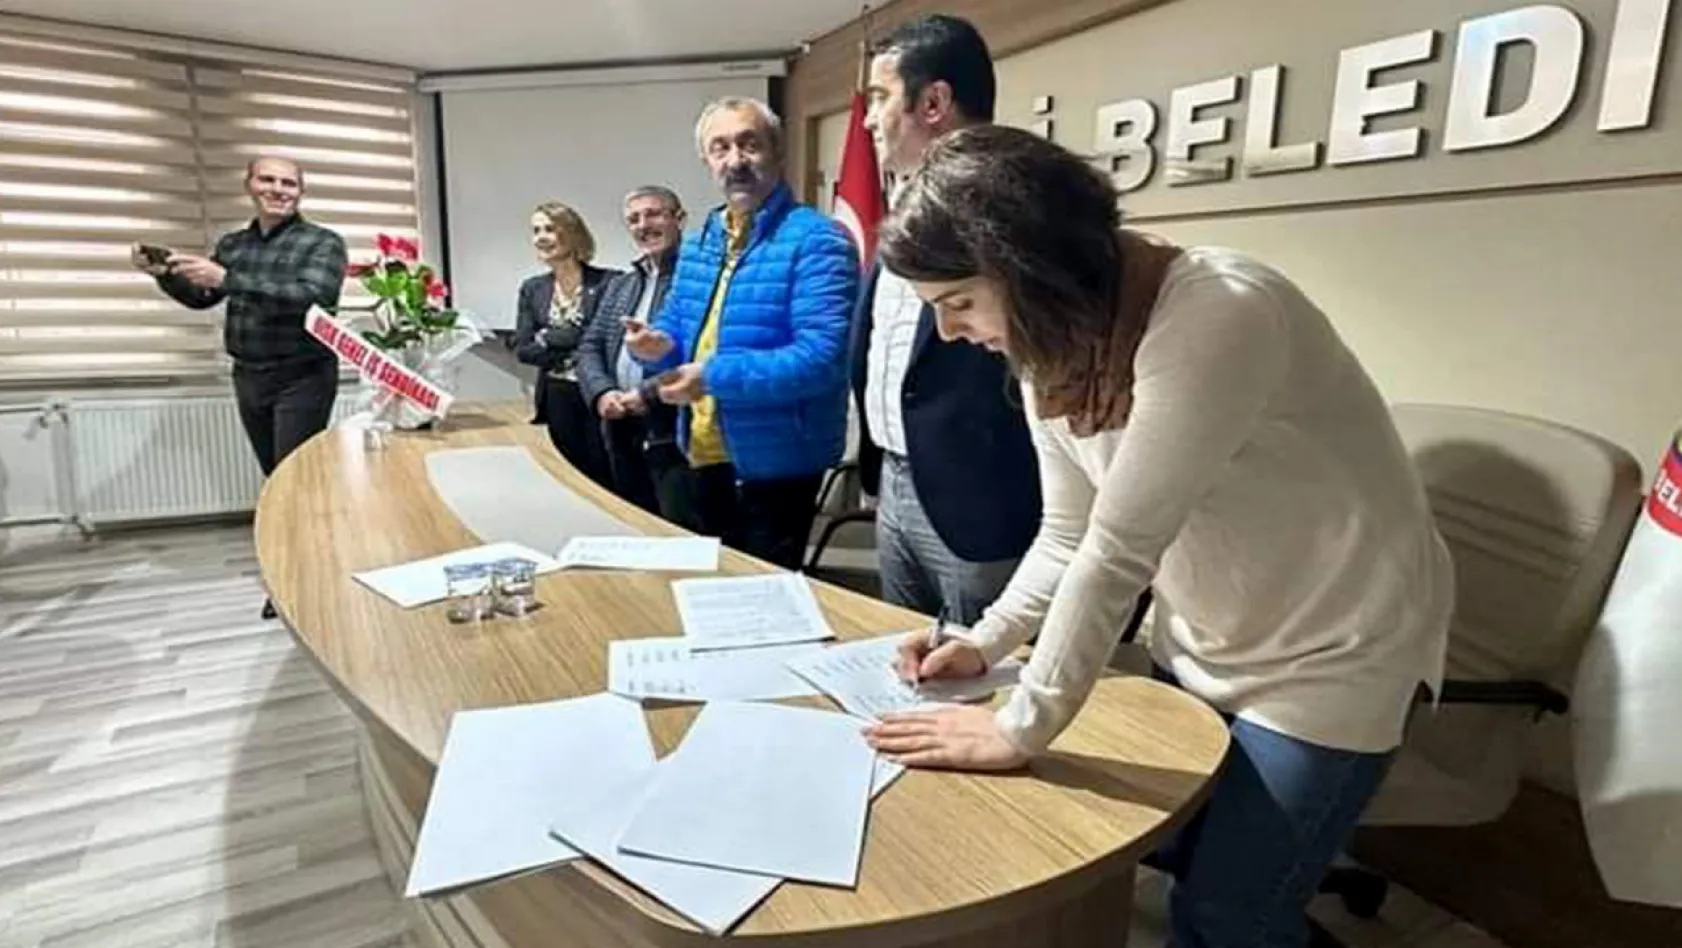 Tunceli Belediyesinde toplu iş sözleşmesi imzalandı!